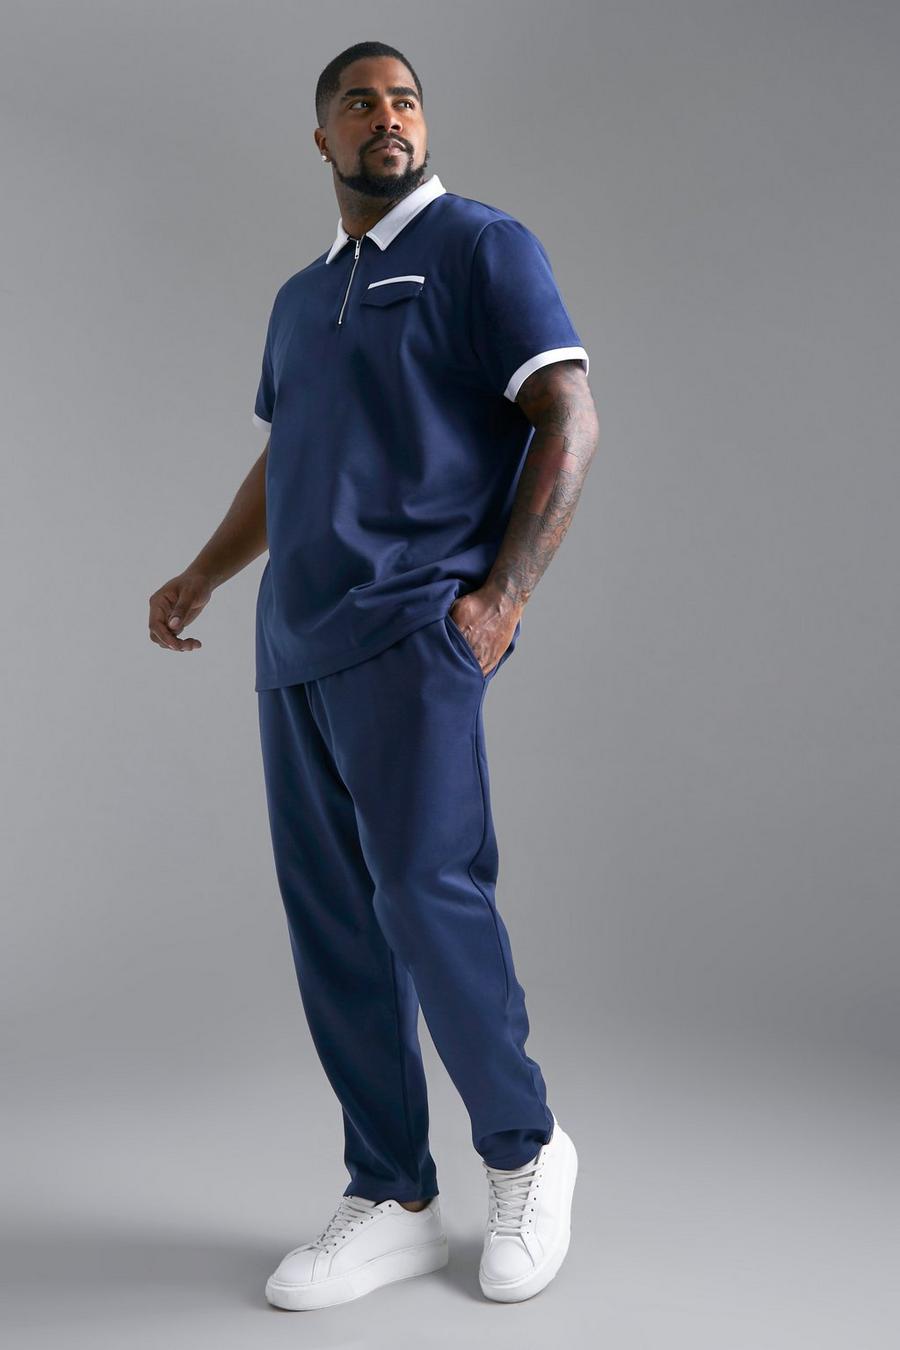 Conjunto Plus de pantalón deportivo ajustado y polo ajustado en contraste, Navy azul marino